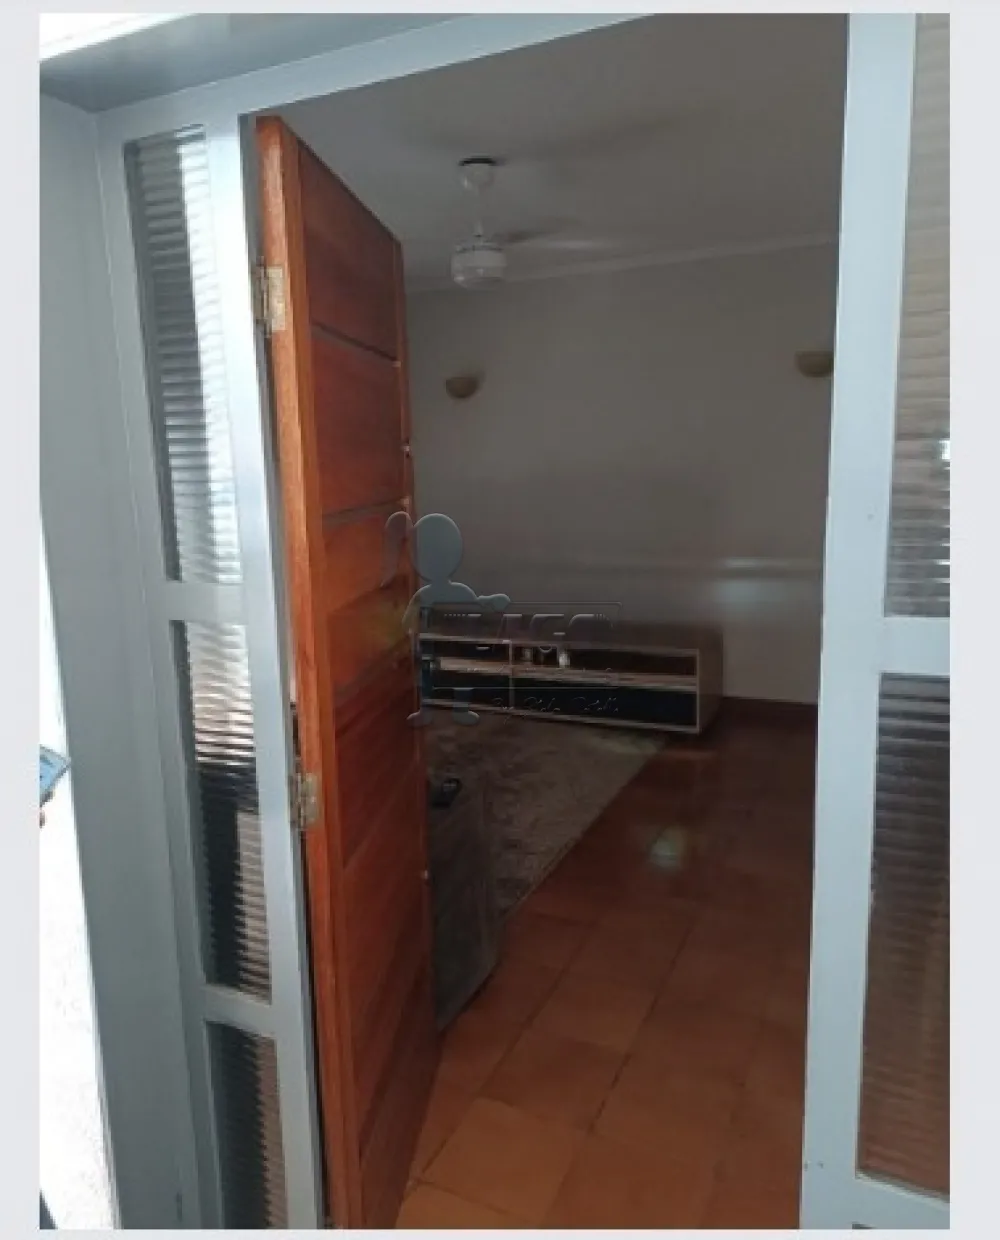 Comprar Casas / Padrão em Ribeirão Preto R$ 370.000,00 - Foto 5